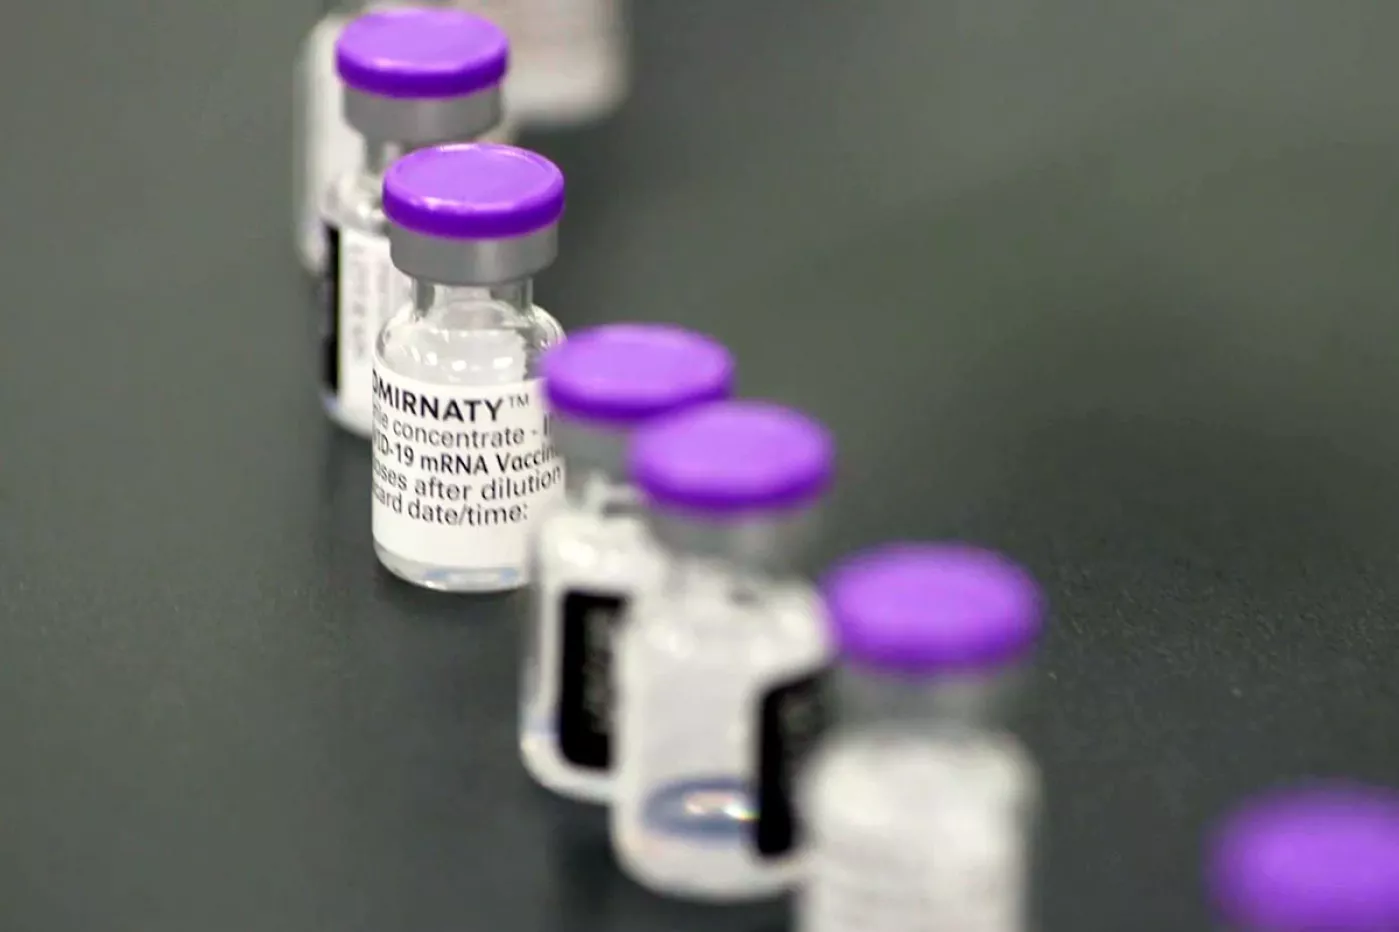 La farmacéutica estadounidense Pfizer ya ha empezado la producción de una nueva vacuna contra la covid-19 que mejore la protección contra la variante ómicron.